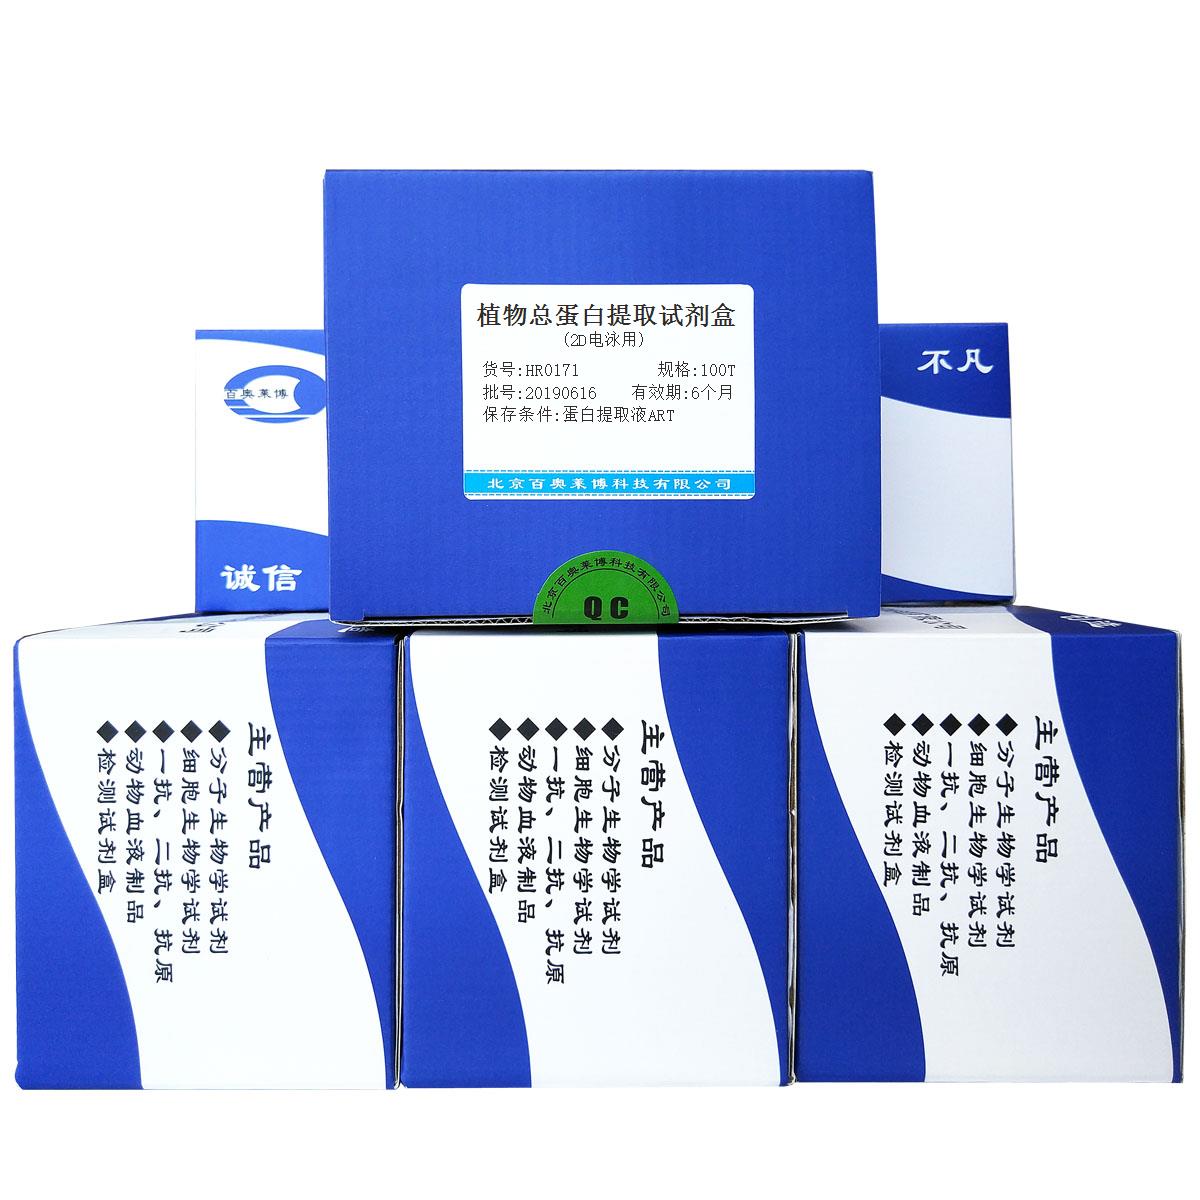 植物总蛋白提取试剂盒(2D电泳用)北京供应商